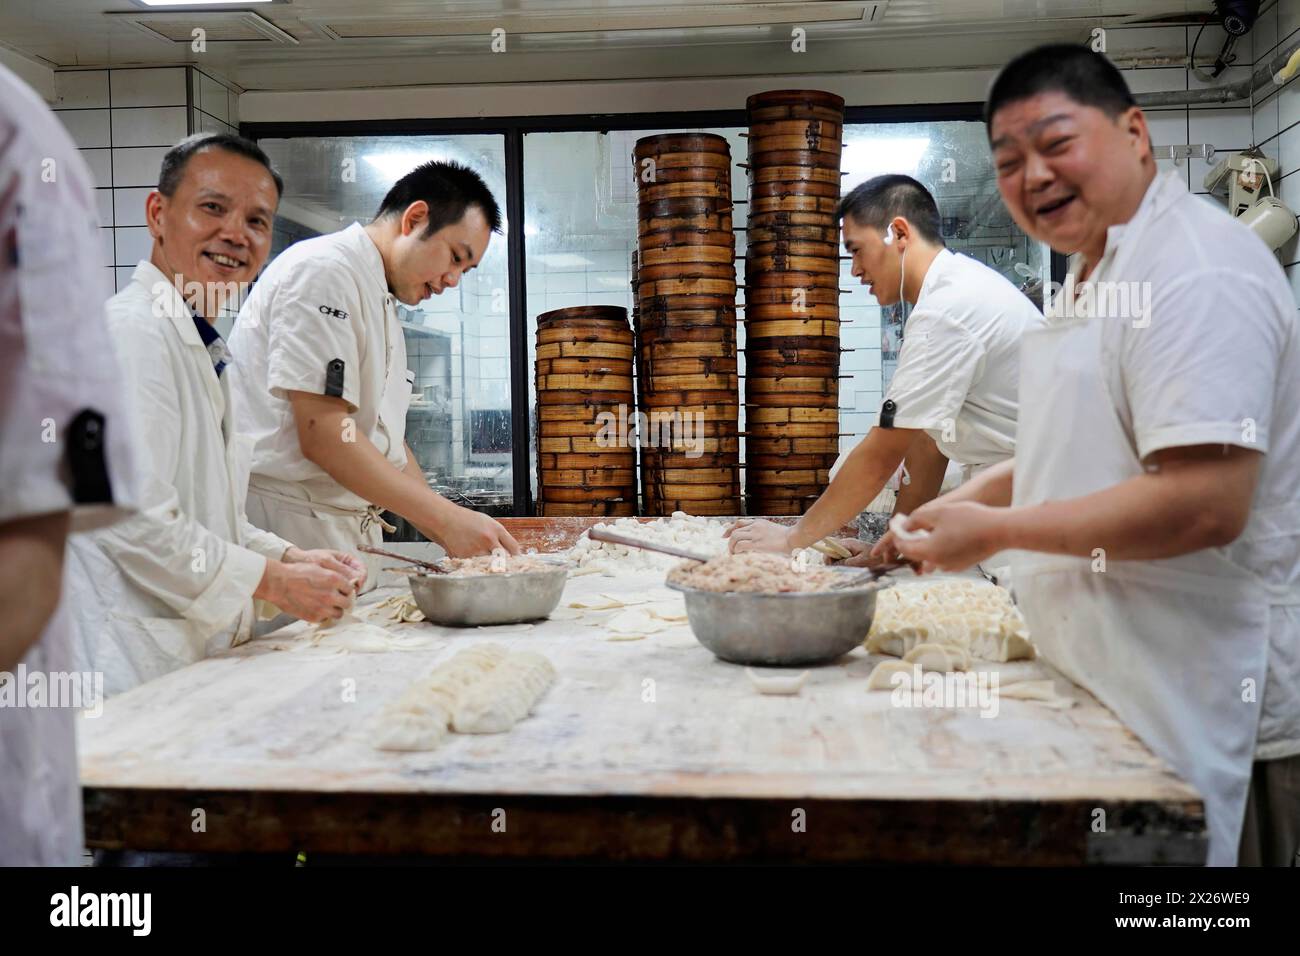 Machen Sie einen Spaziergang durch Chongqing, Provinz Chongqing, China, Asien. Das Küchenpersonal bereitet gemeinsam Teiggerichte in einem asiatischen Restaurant, Chongqing, Asien, zu Stockfoto